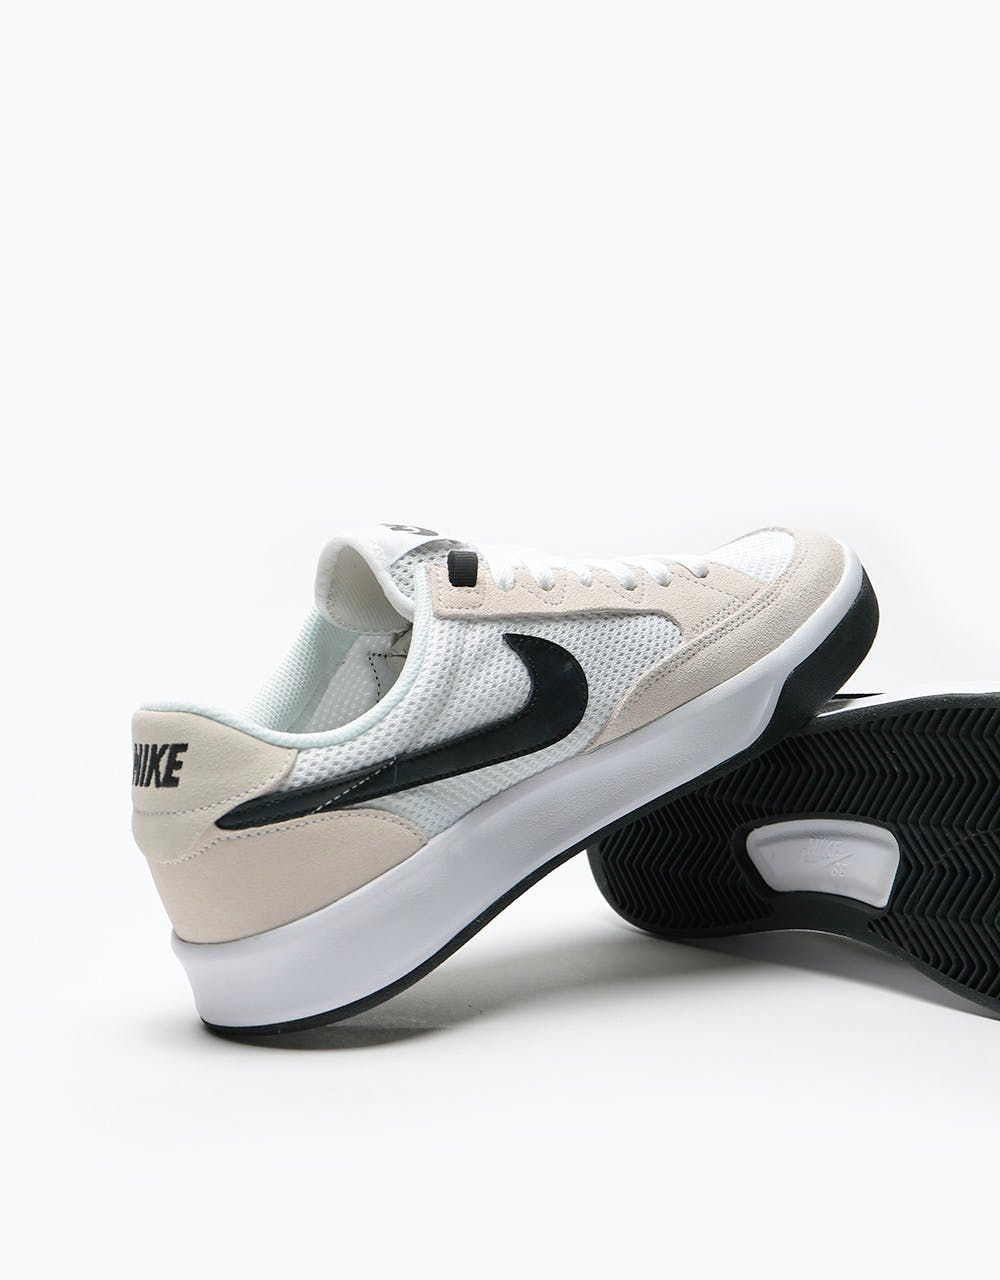 Nike SB Adversary Skate Shoes - White/Black